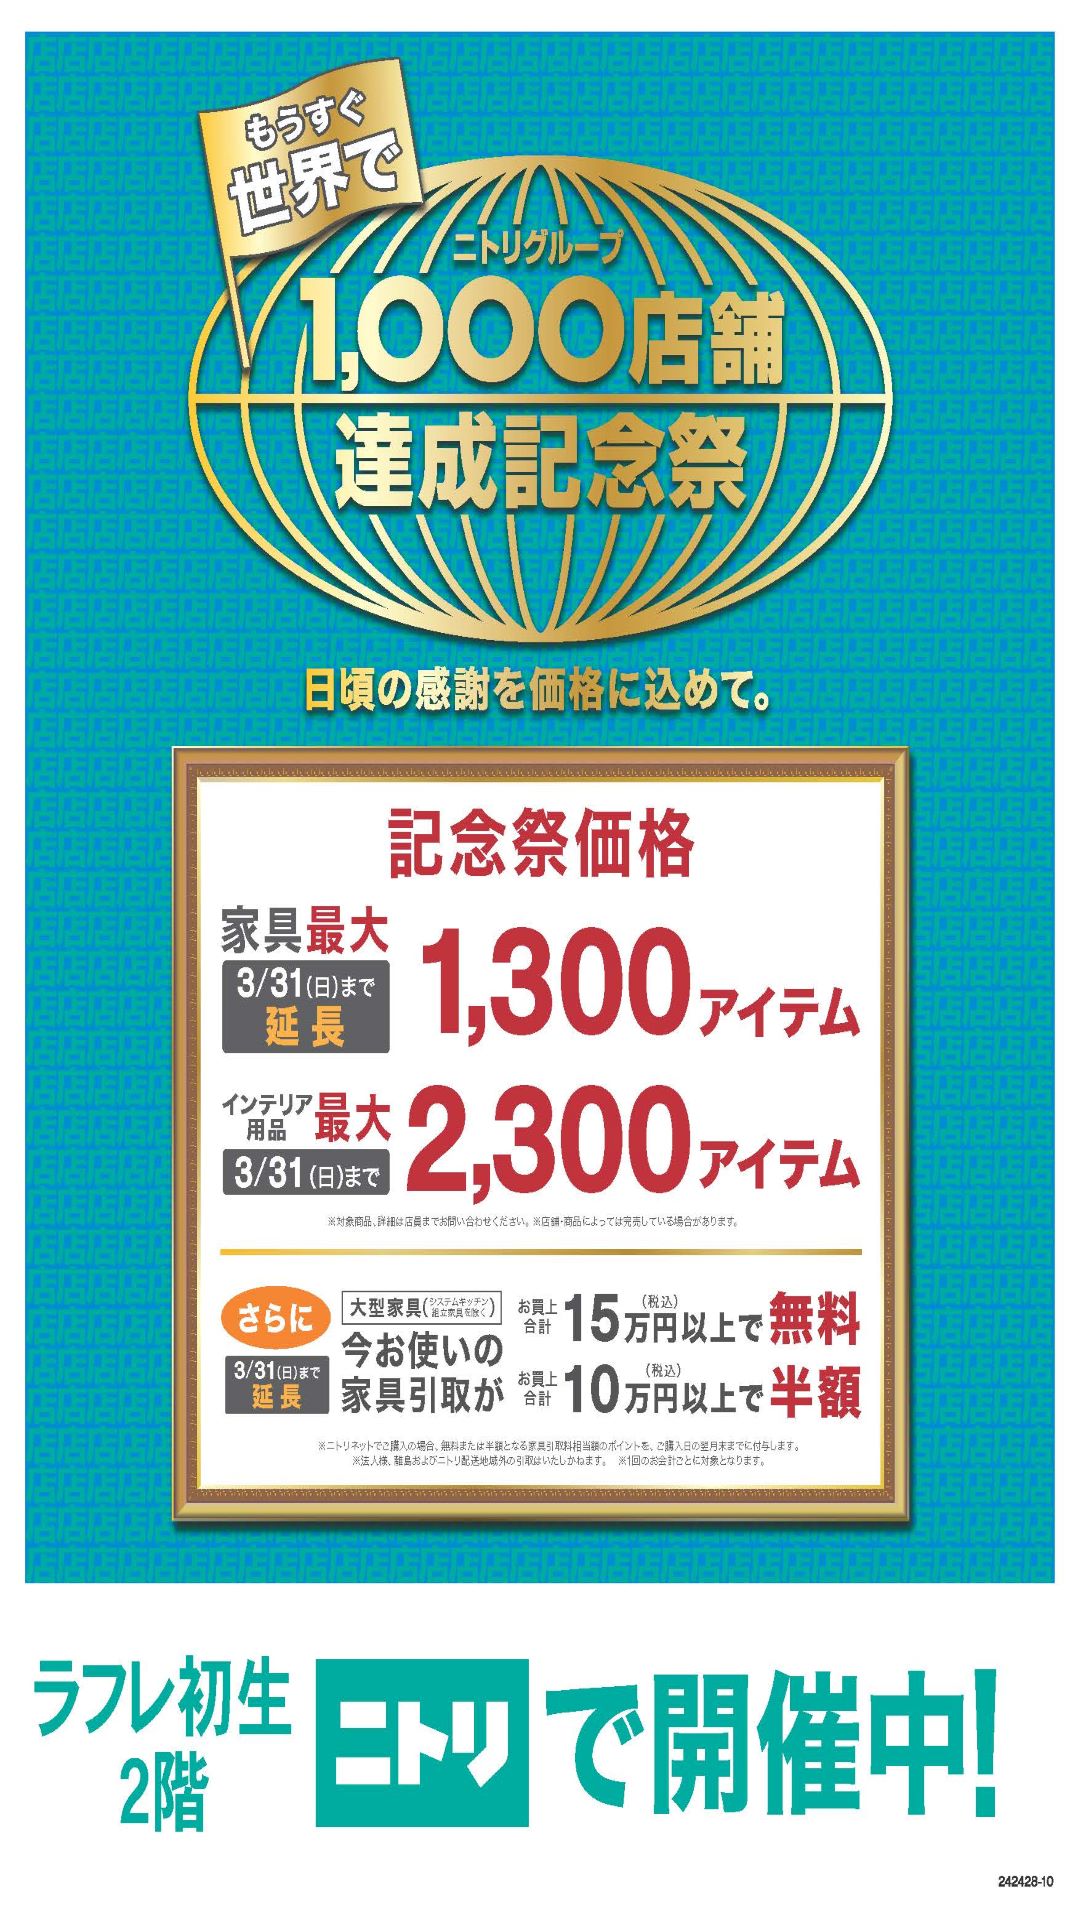 【好評につき、期間延長！】ニトリグループ 1,000店舗達成記念祭